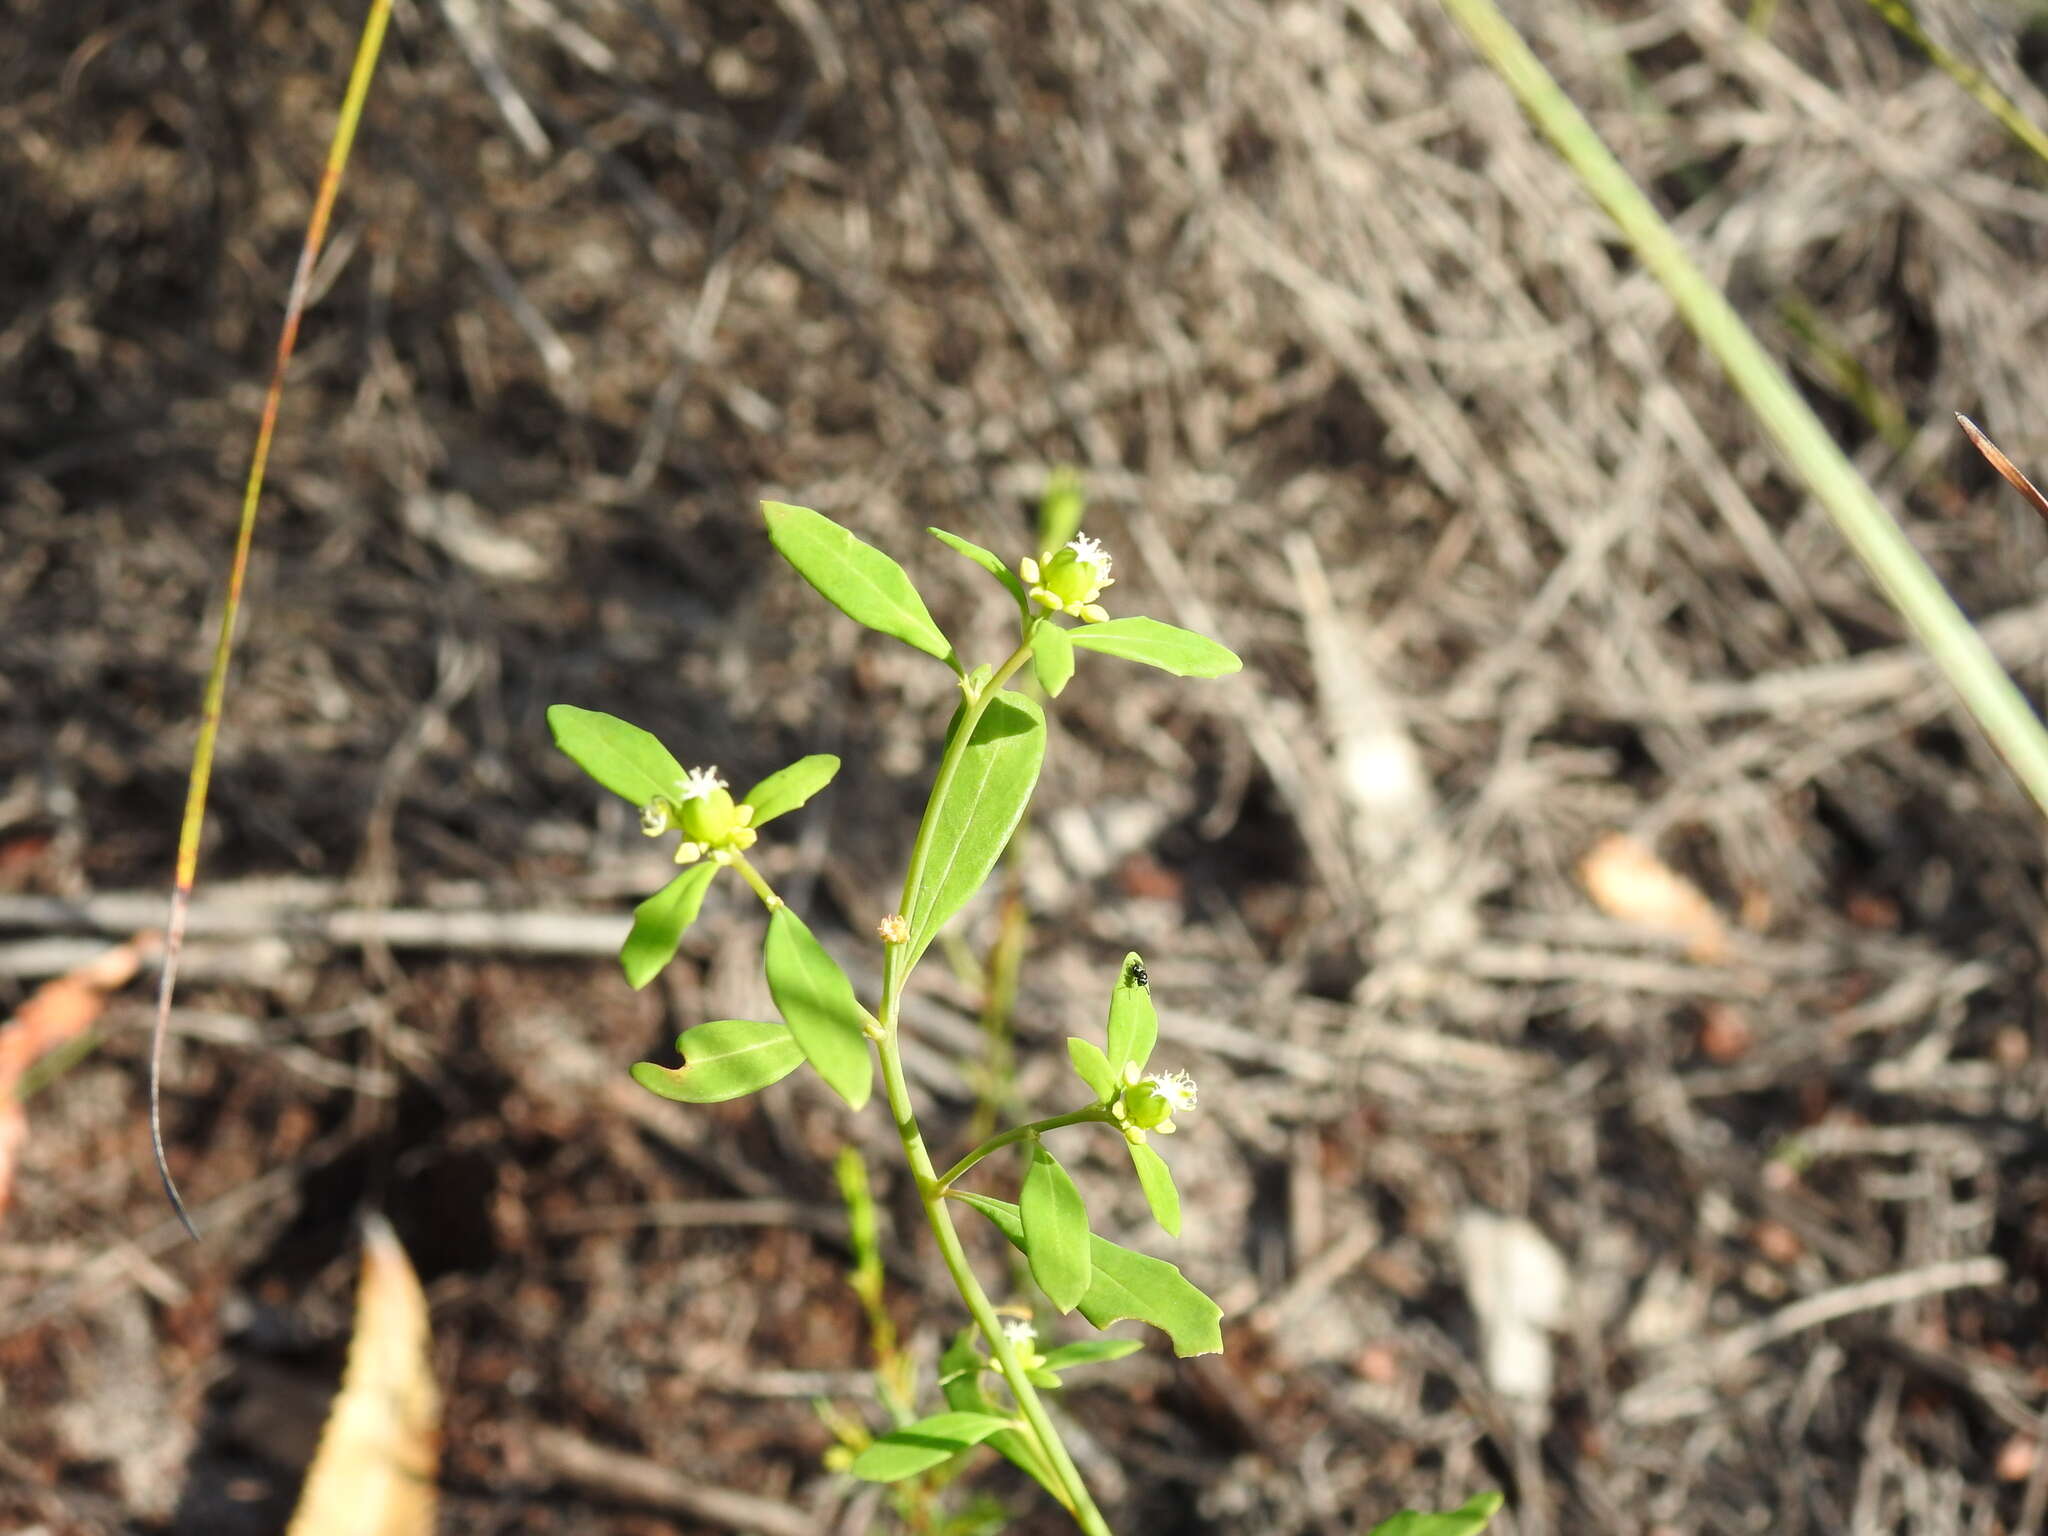 Monotaxis macrophylla Benth. resmi